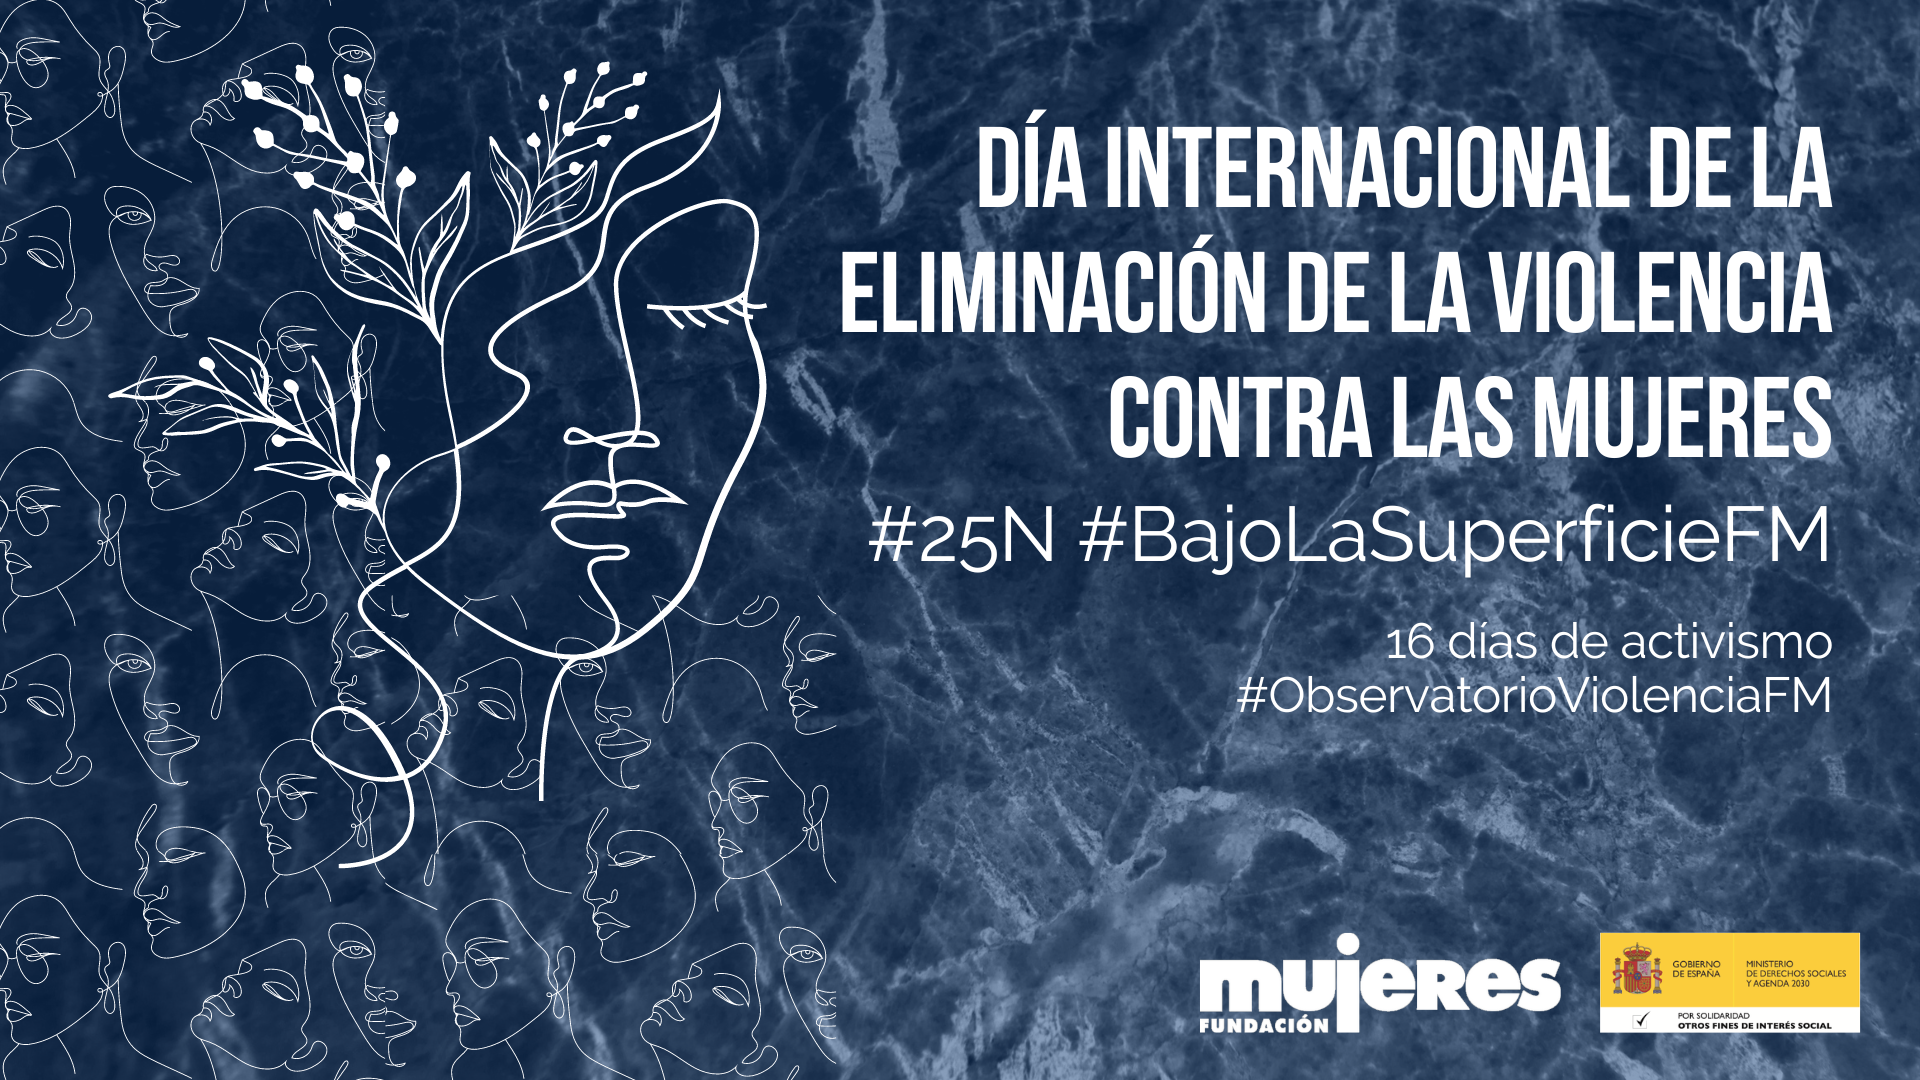 #25N #BajoLaSuperficieFM Día Internacional de la Eliminación de la Violencia contra las Mujeres